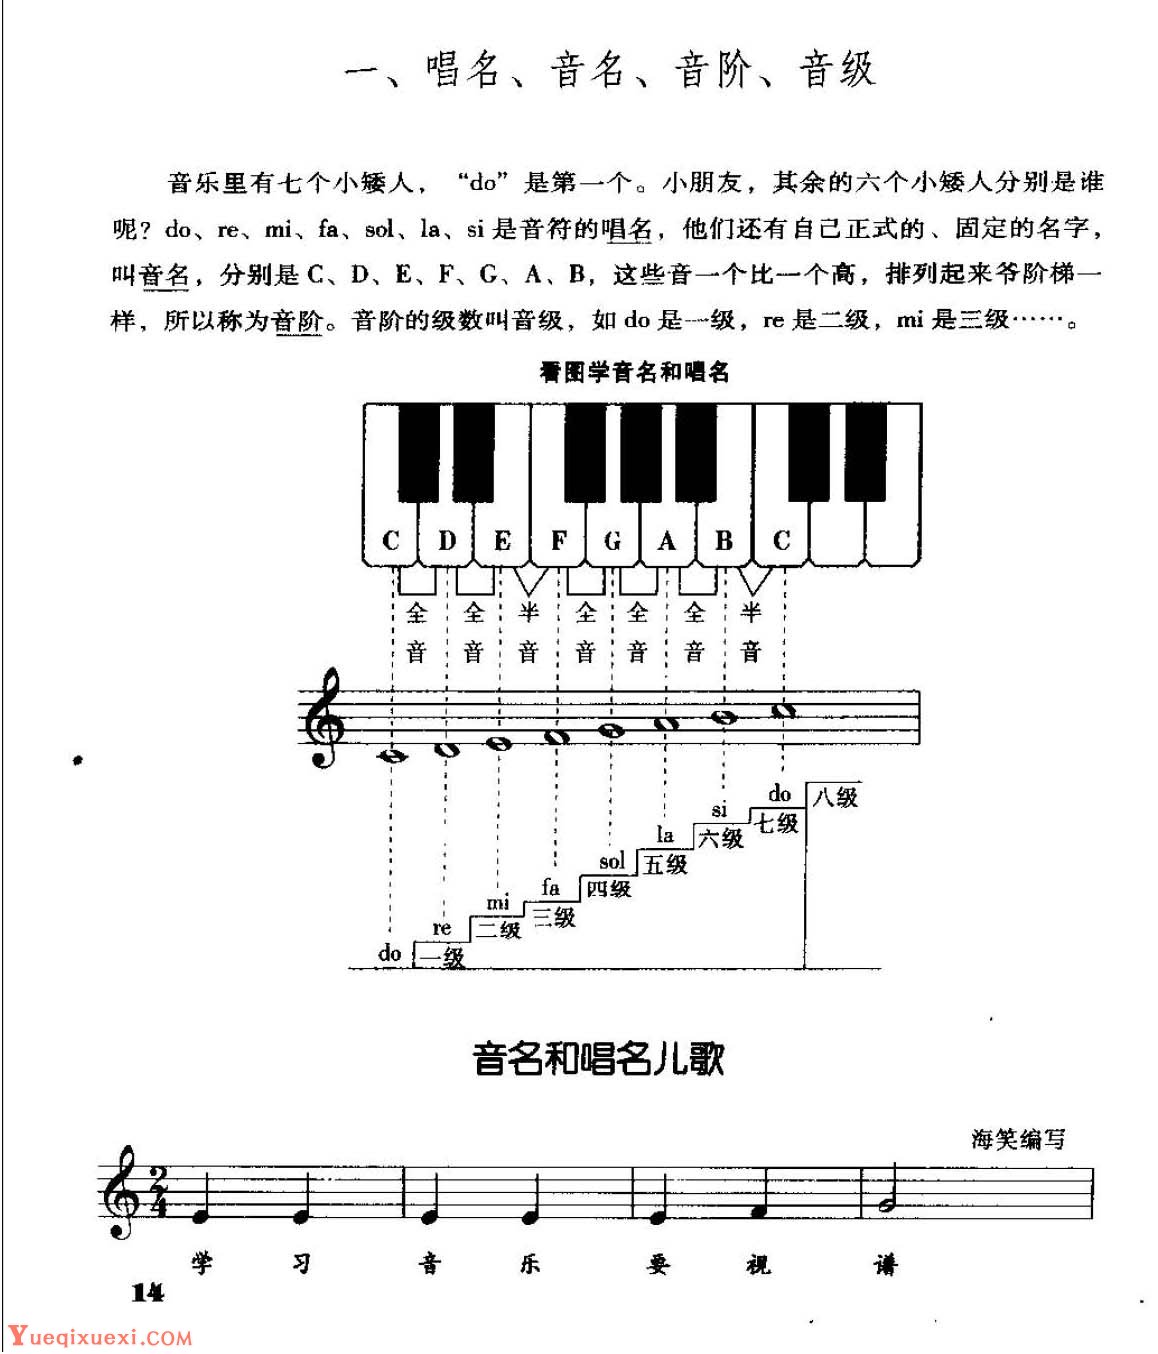 电子琴基础教学《唱名、音名、音阶、音级》